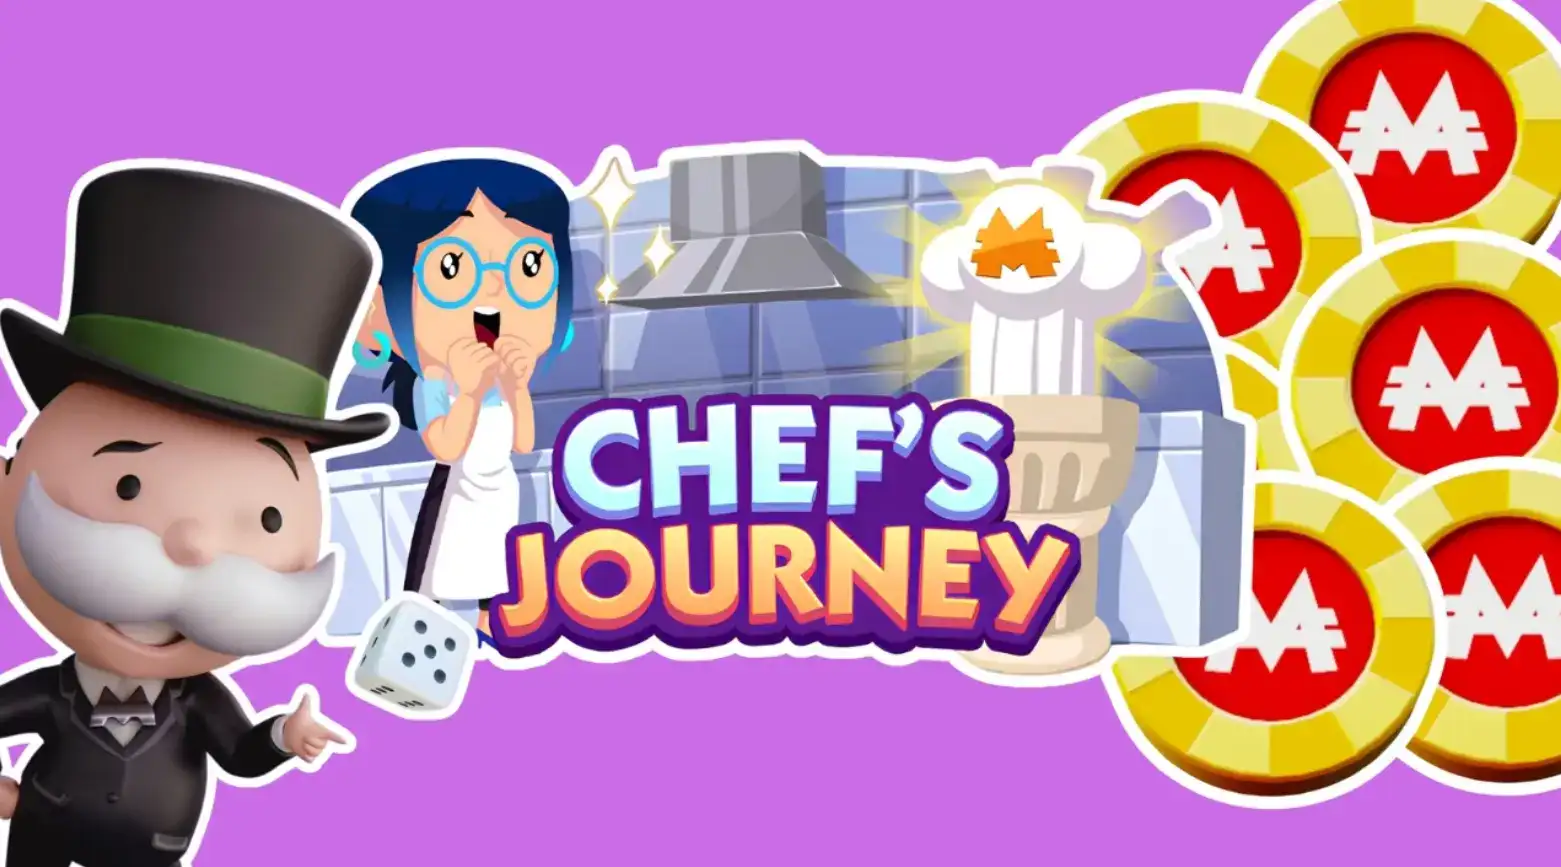 monopoly go chef's journey rewards and milestones